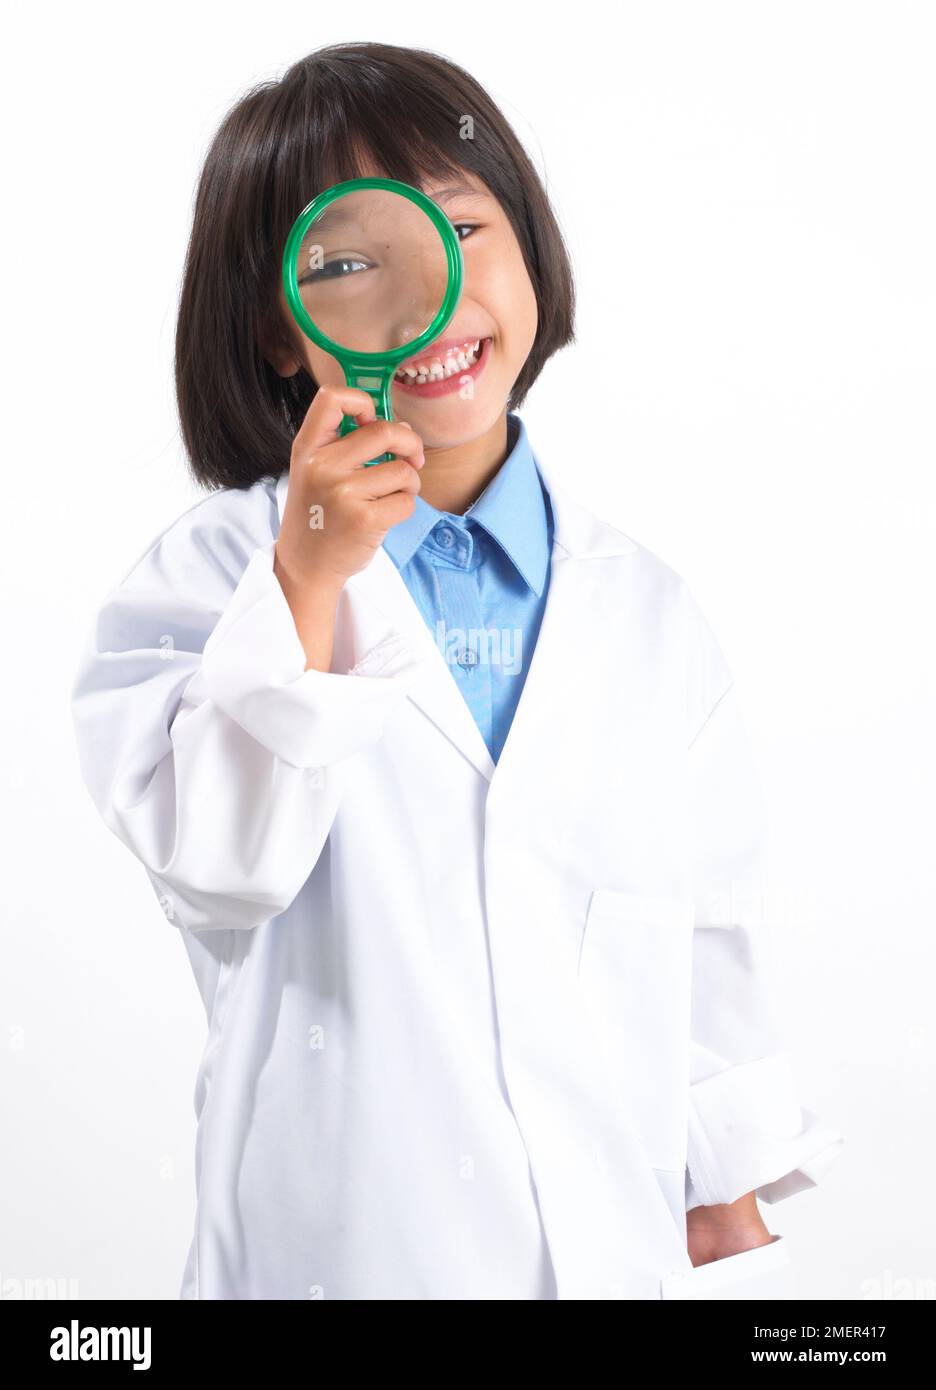 Ragazza che indossa un camice da laboratorio bianco, in piedi tenendo una lente d'ingrandimento per il suo occhio, 5 anni Foto Stock